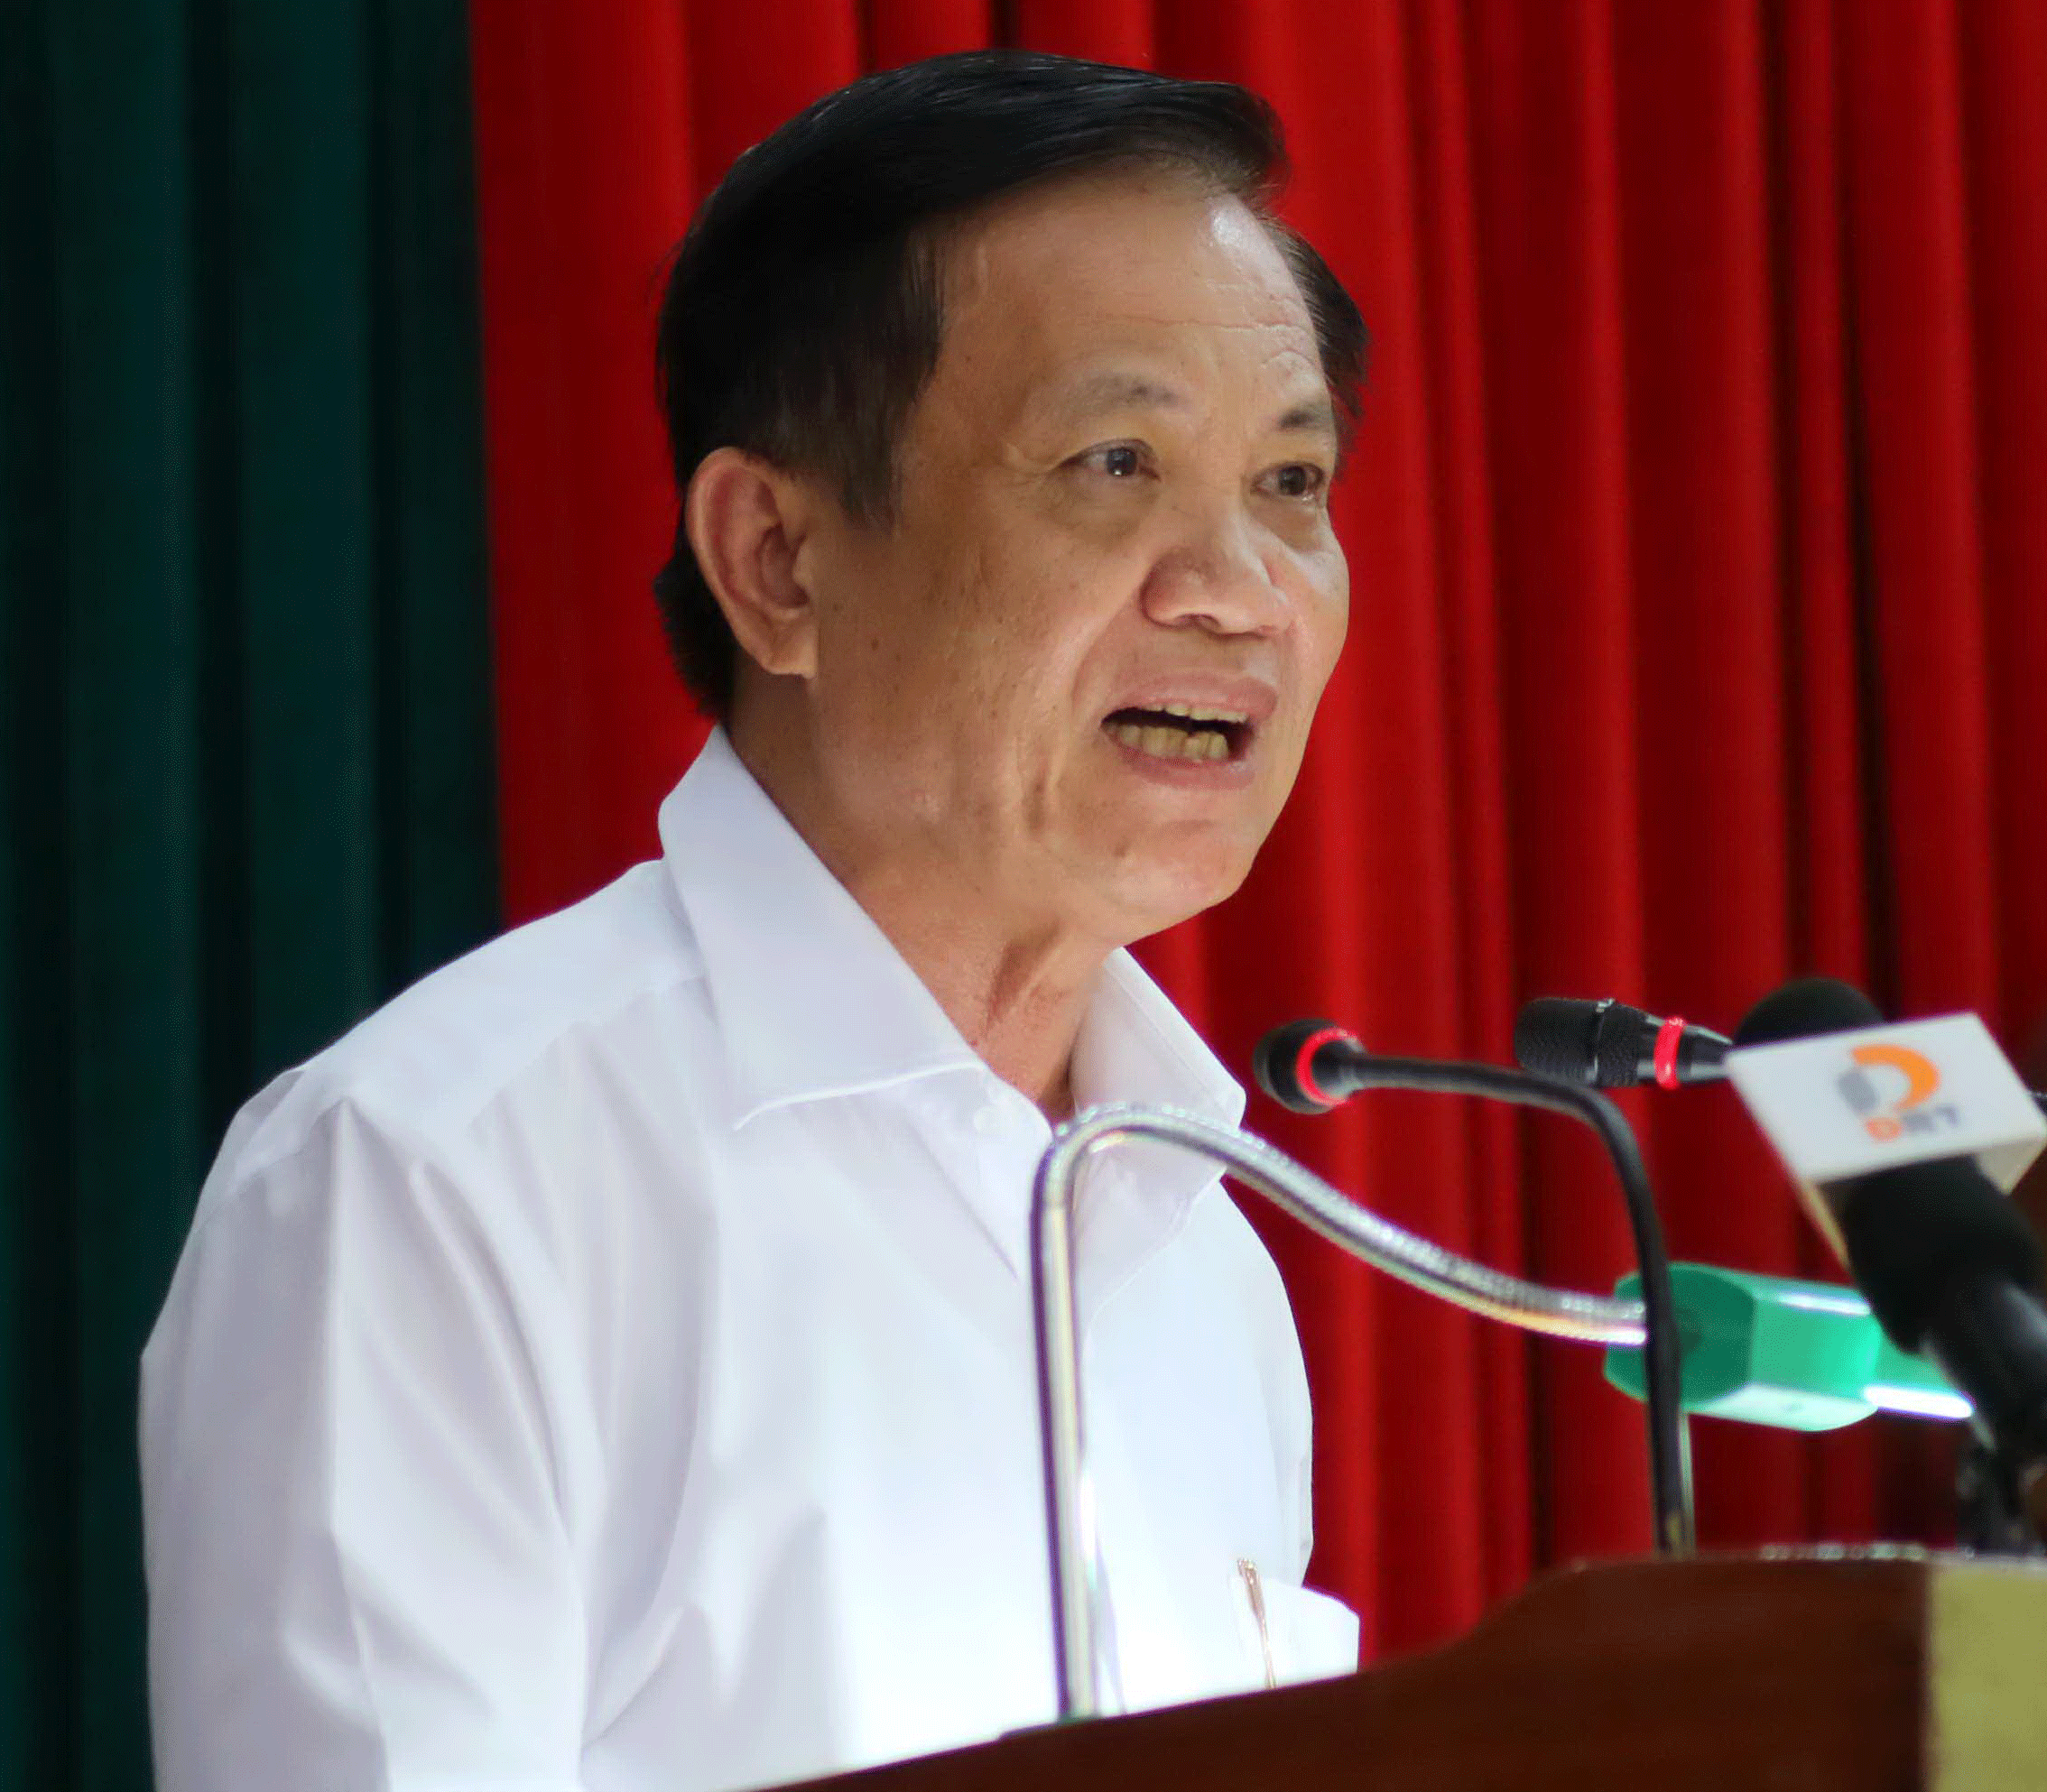 Ông Trần Thọ cho biết hiện có 3 ứng viên sẽ tham gia thi tuyển chức danh giám đốc Sở Xây dựng